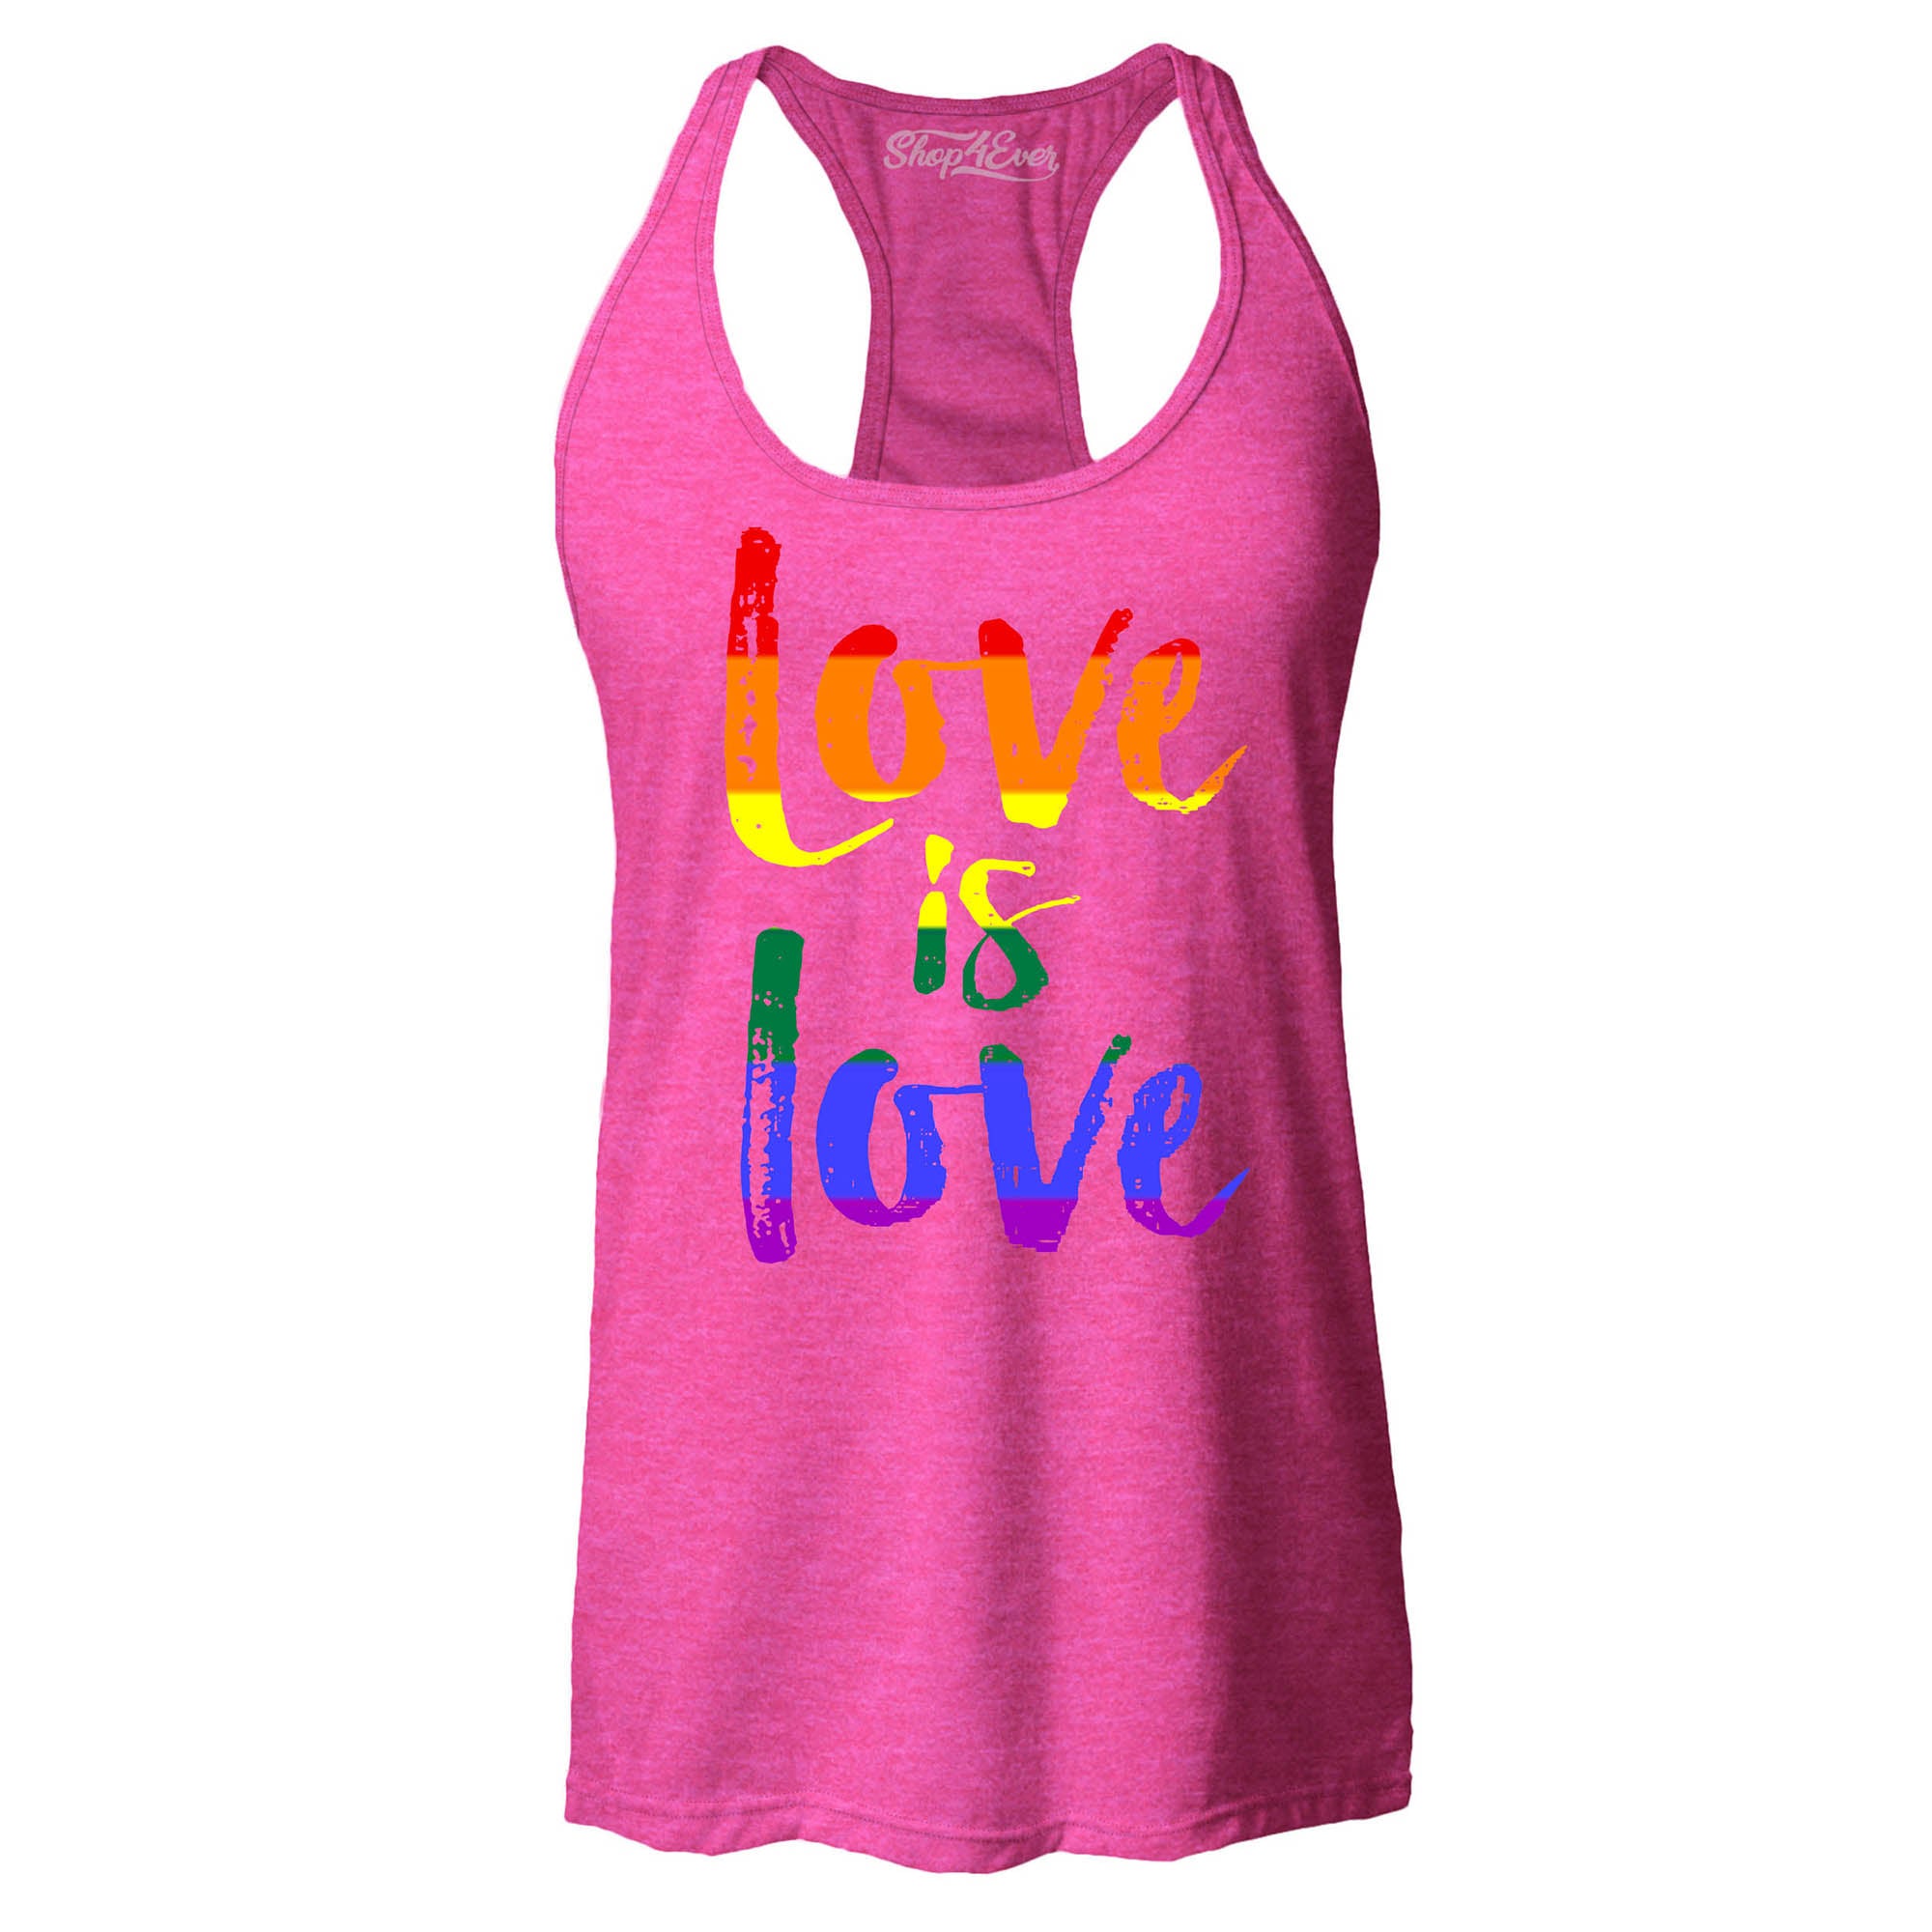 Love is Love Women's Racerback Gay Pride Tank Tops Slim FIT